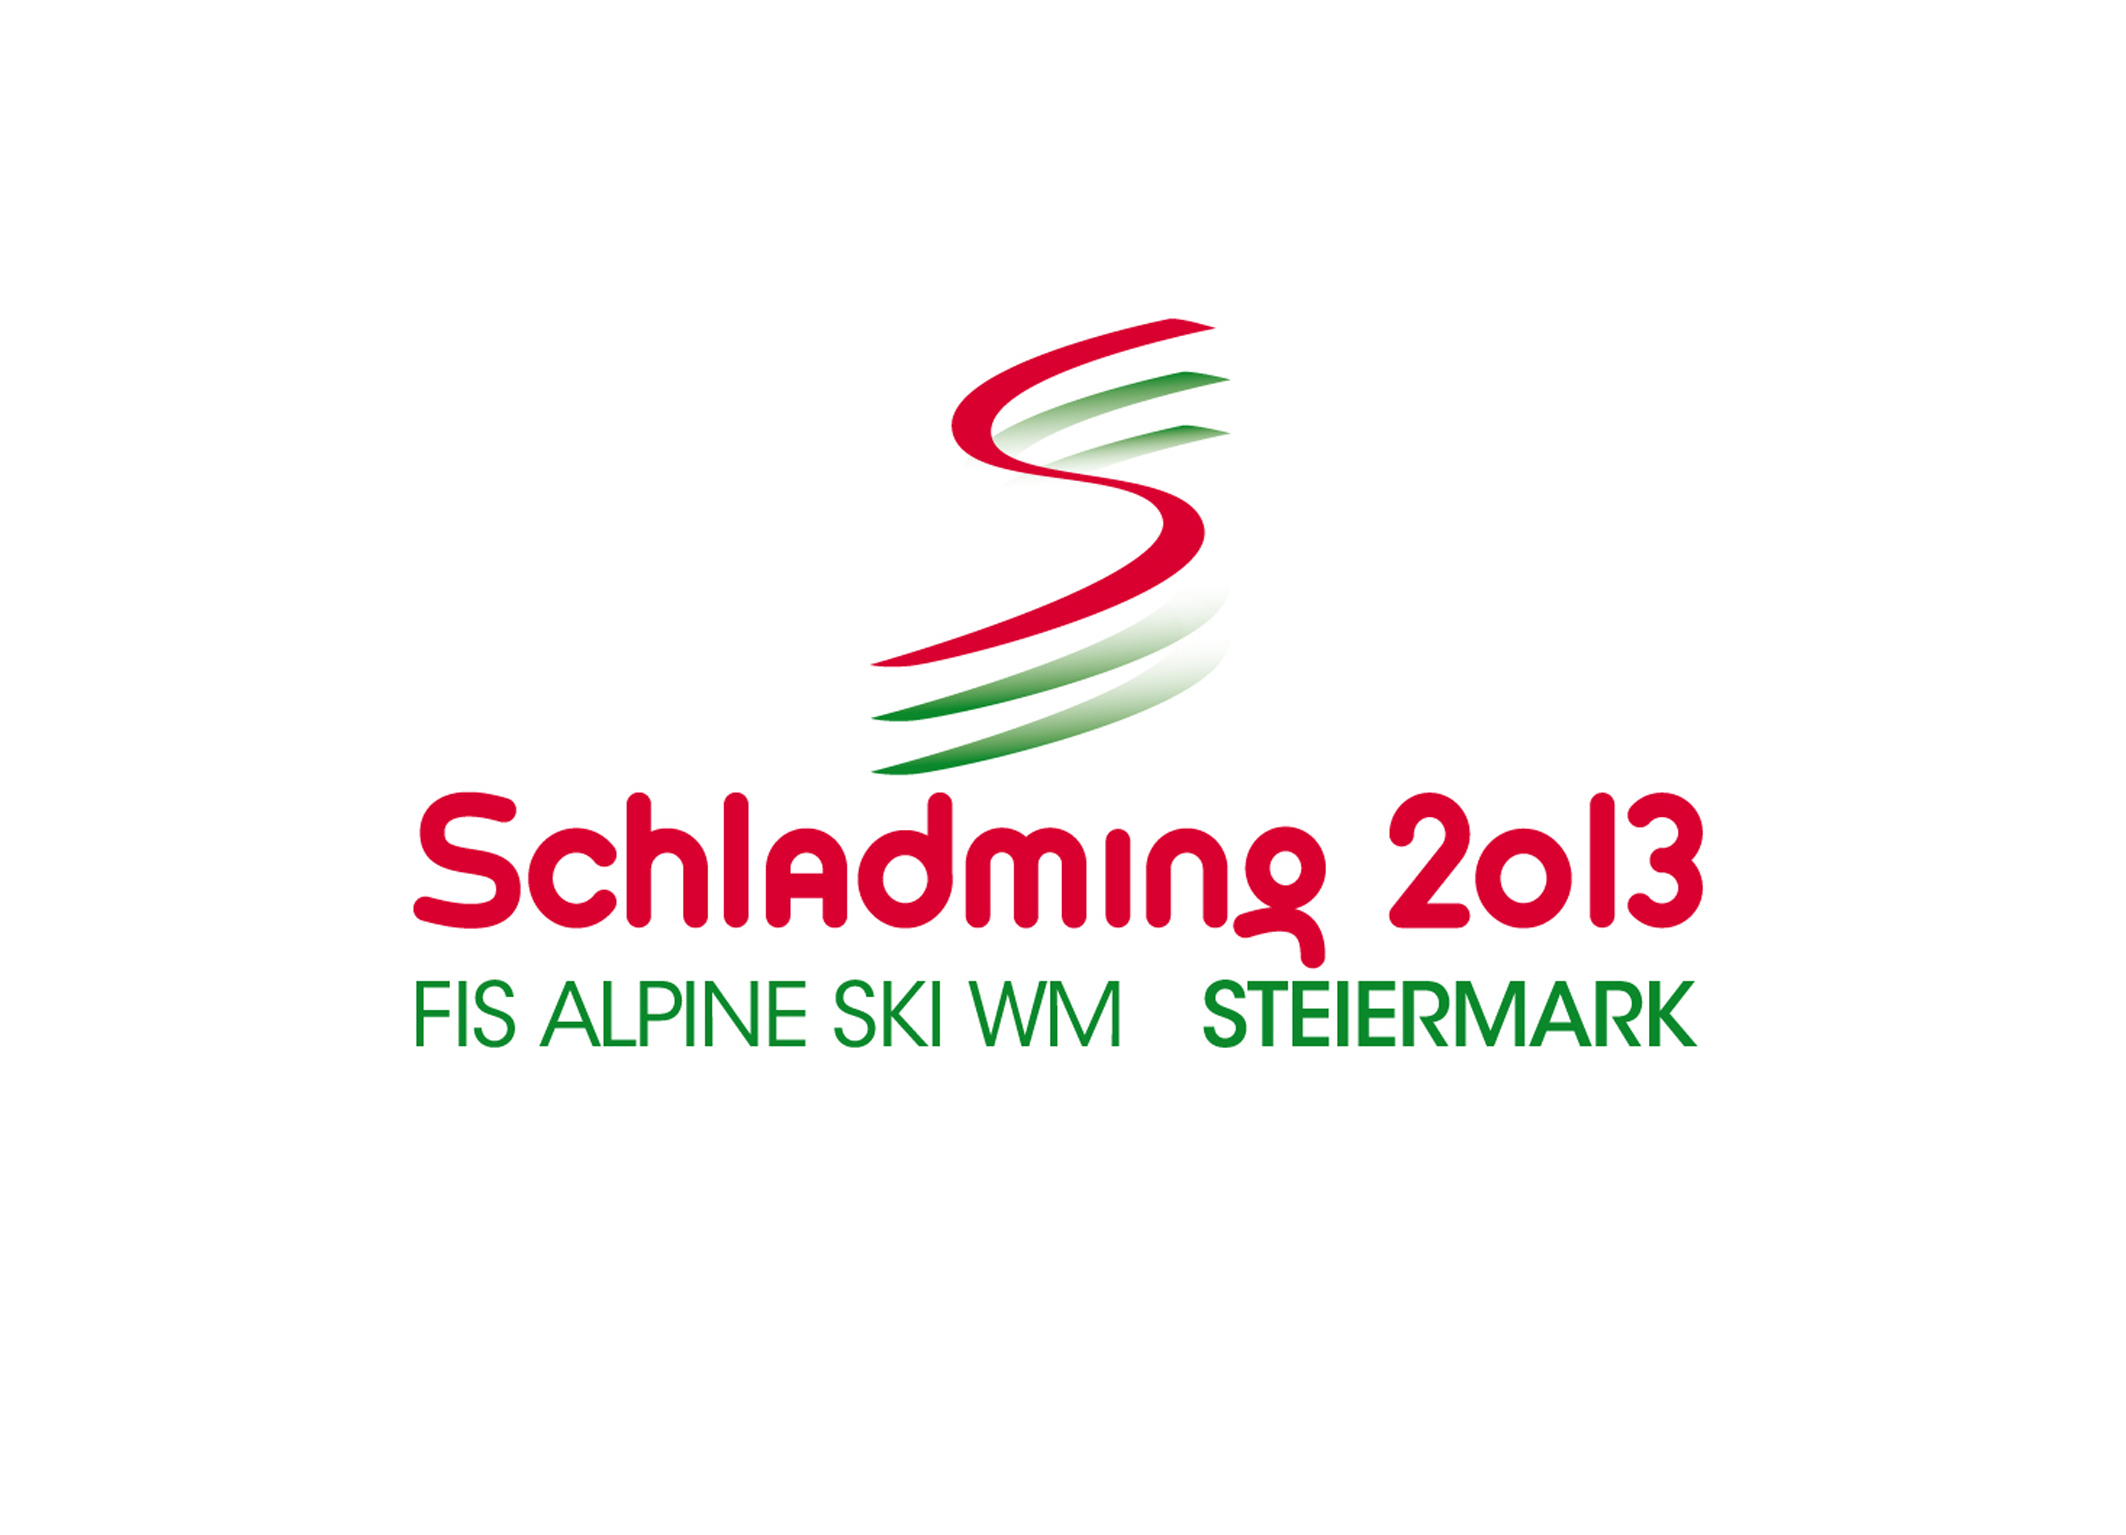 Die Ski-alpin-WM live bei Schweizer Radio und Fernsehen - Medienportal